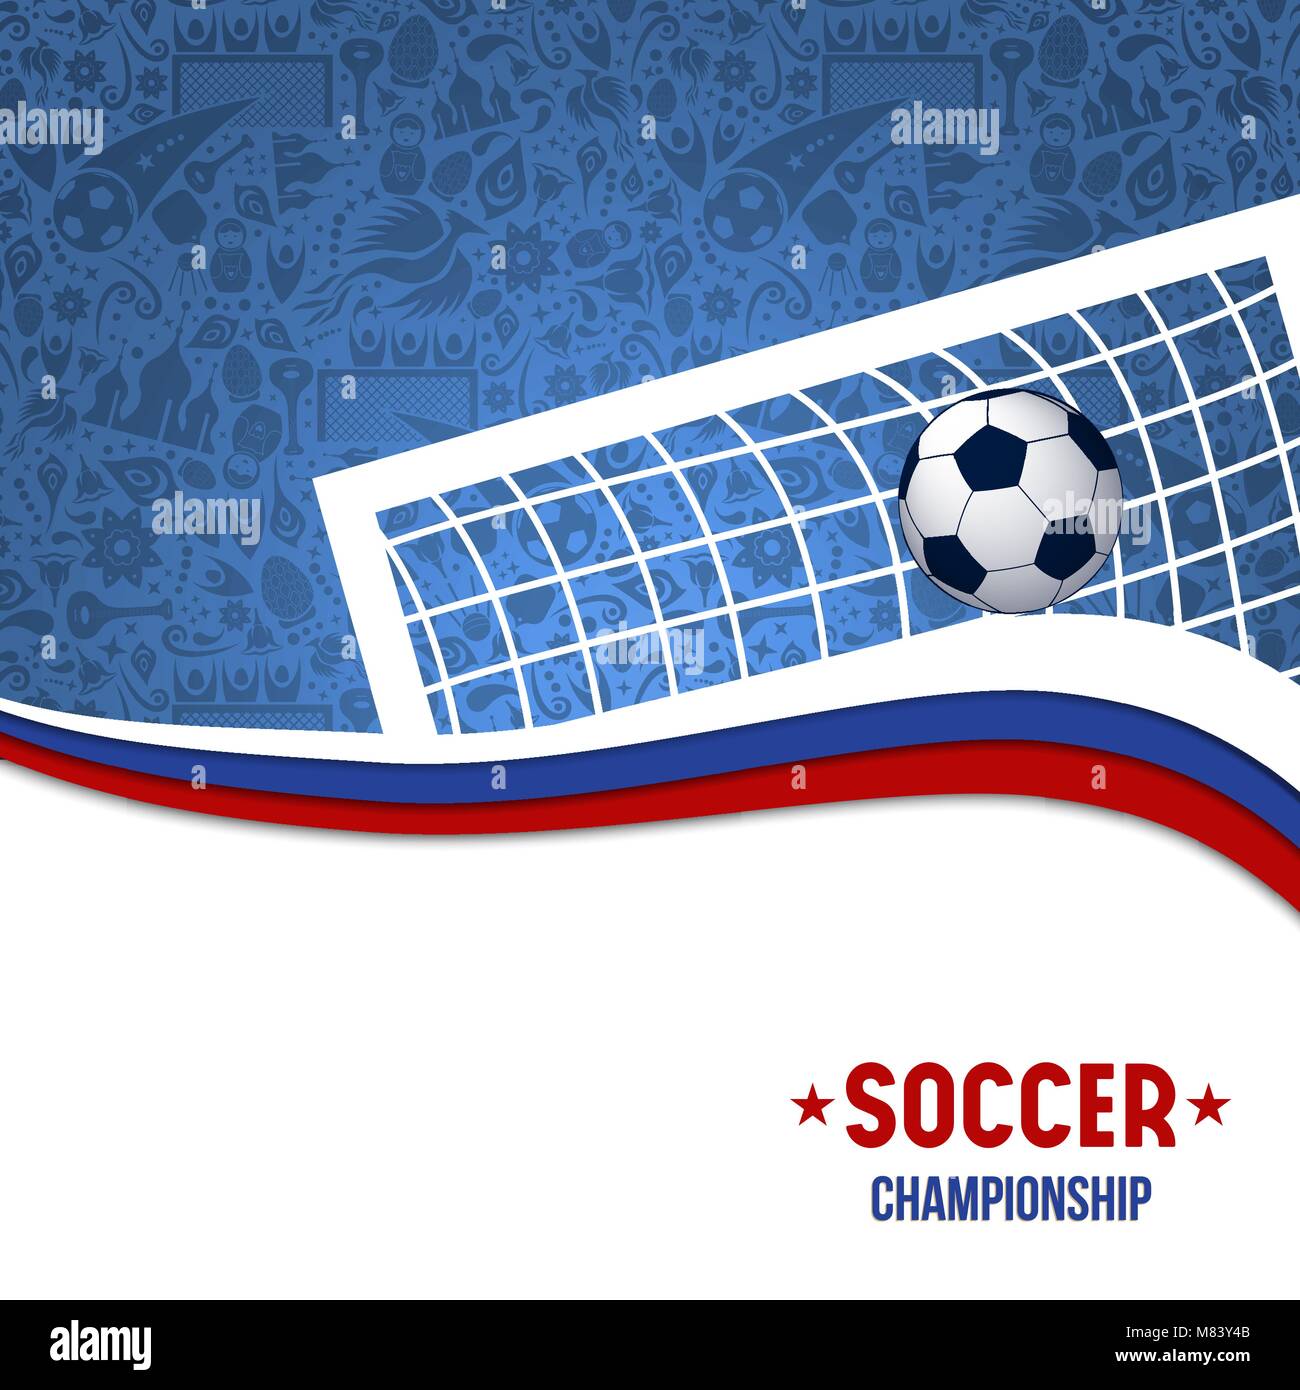 Fußball-Spiel Illustration für Veranstaltung mit fußballtor Post und traditionellen Hintergrund in der russischen Farben. EPS 10 Vektor. Stock Vektor